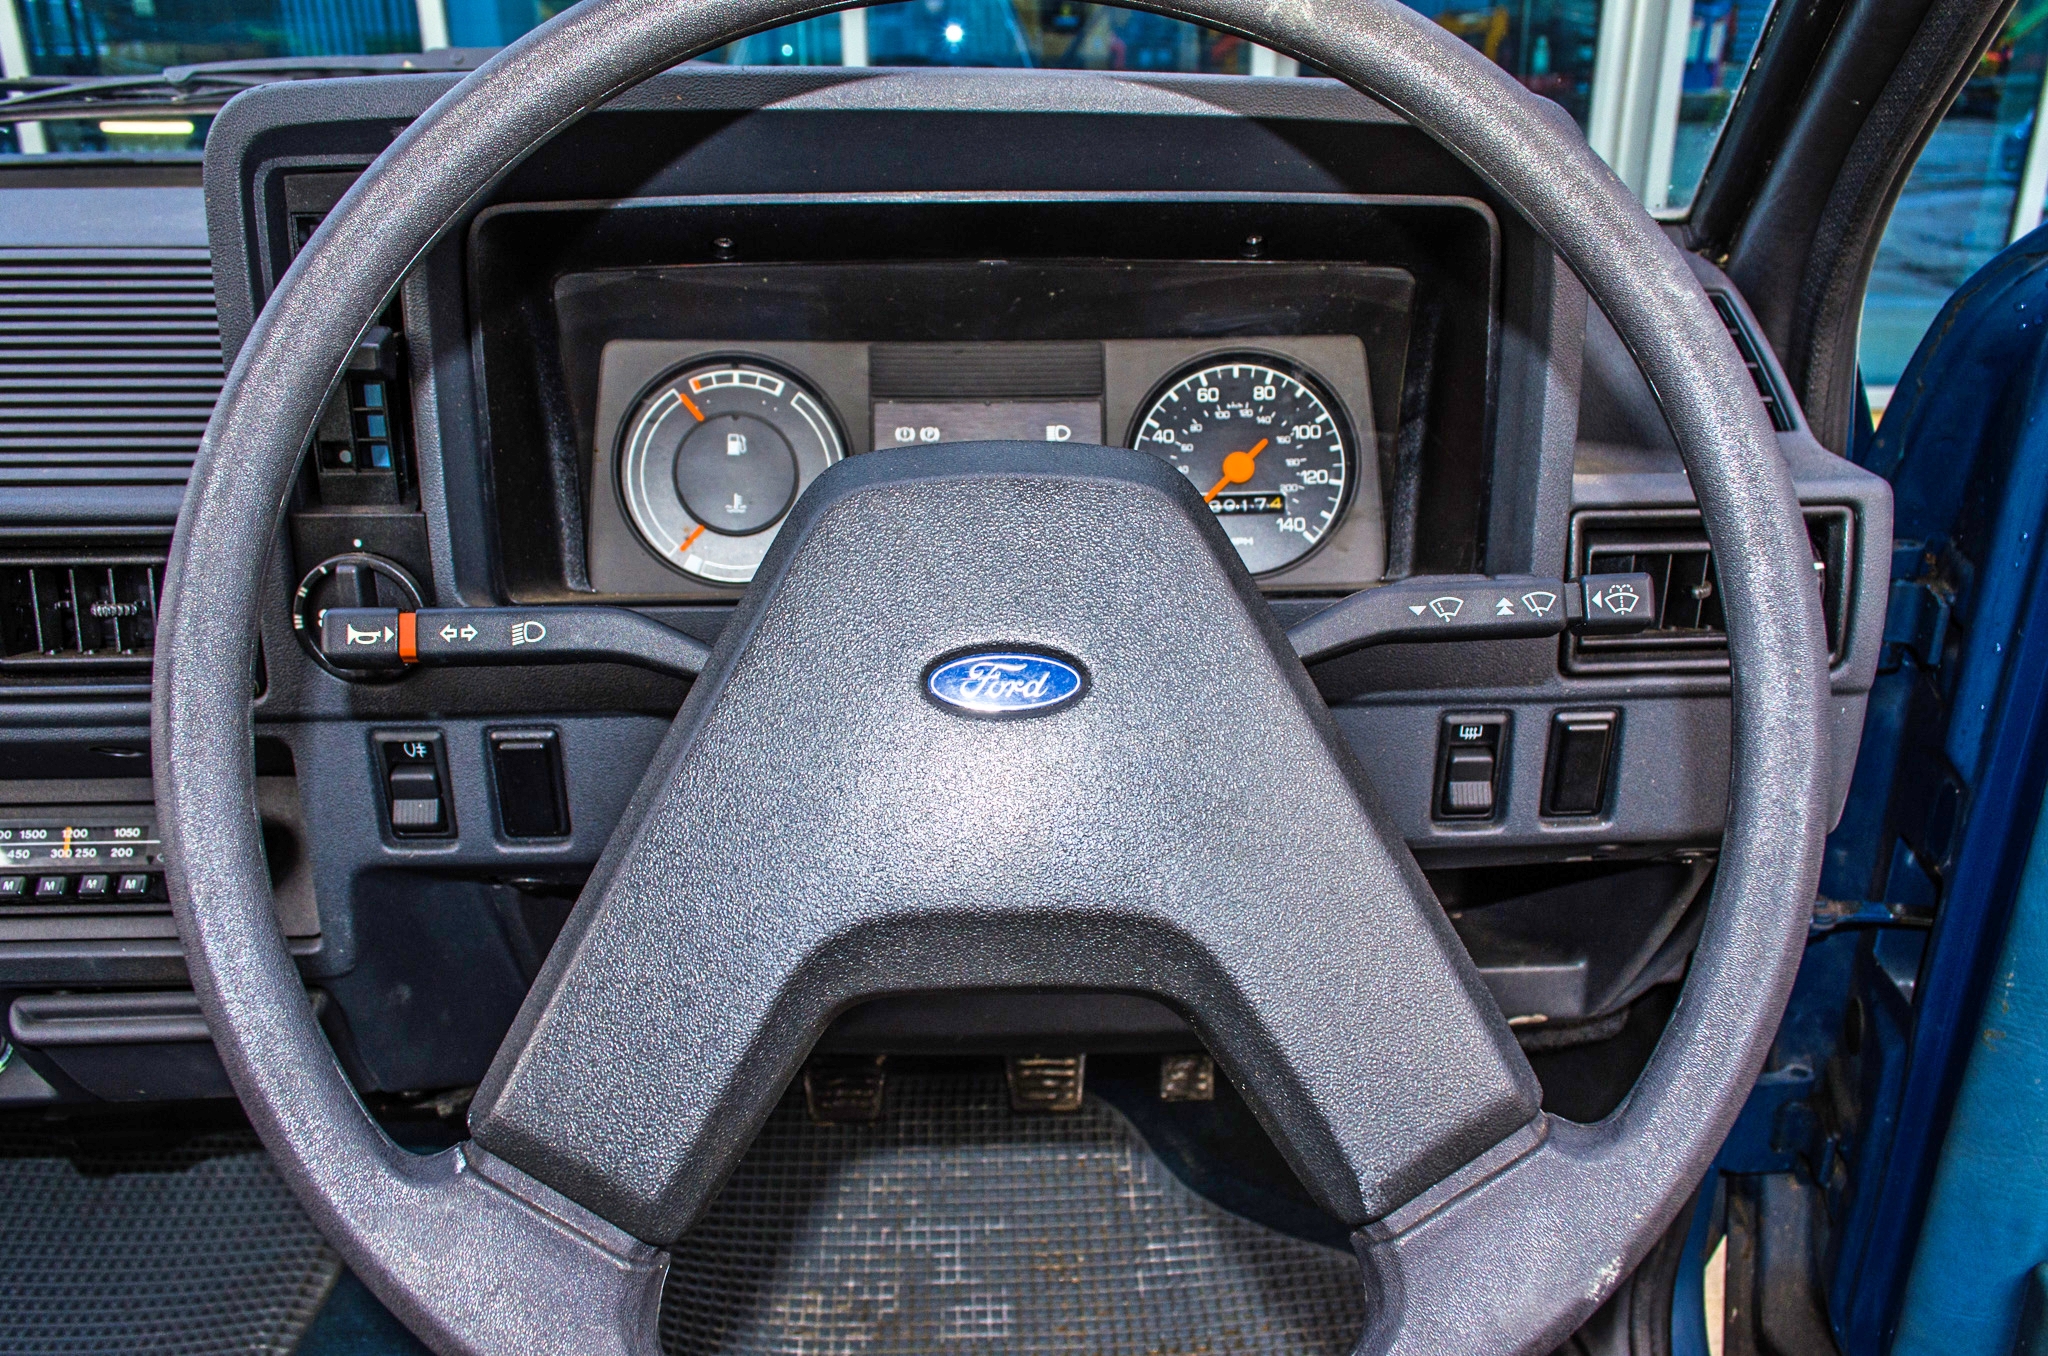 1982 Ford Escort 1.1 L 1100 cc 5 door hatchback 0nly 2017 miles - Image 38 of 50